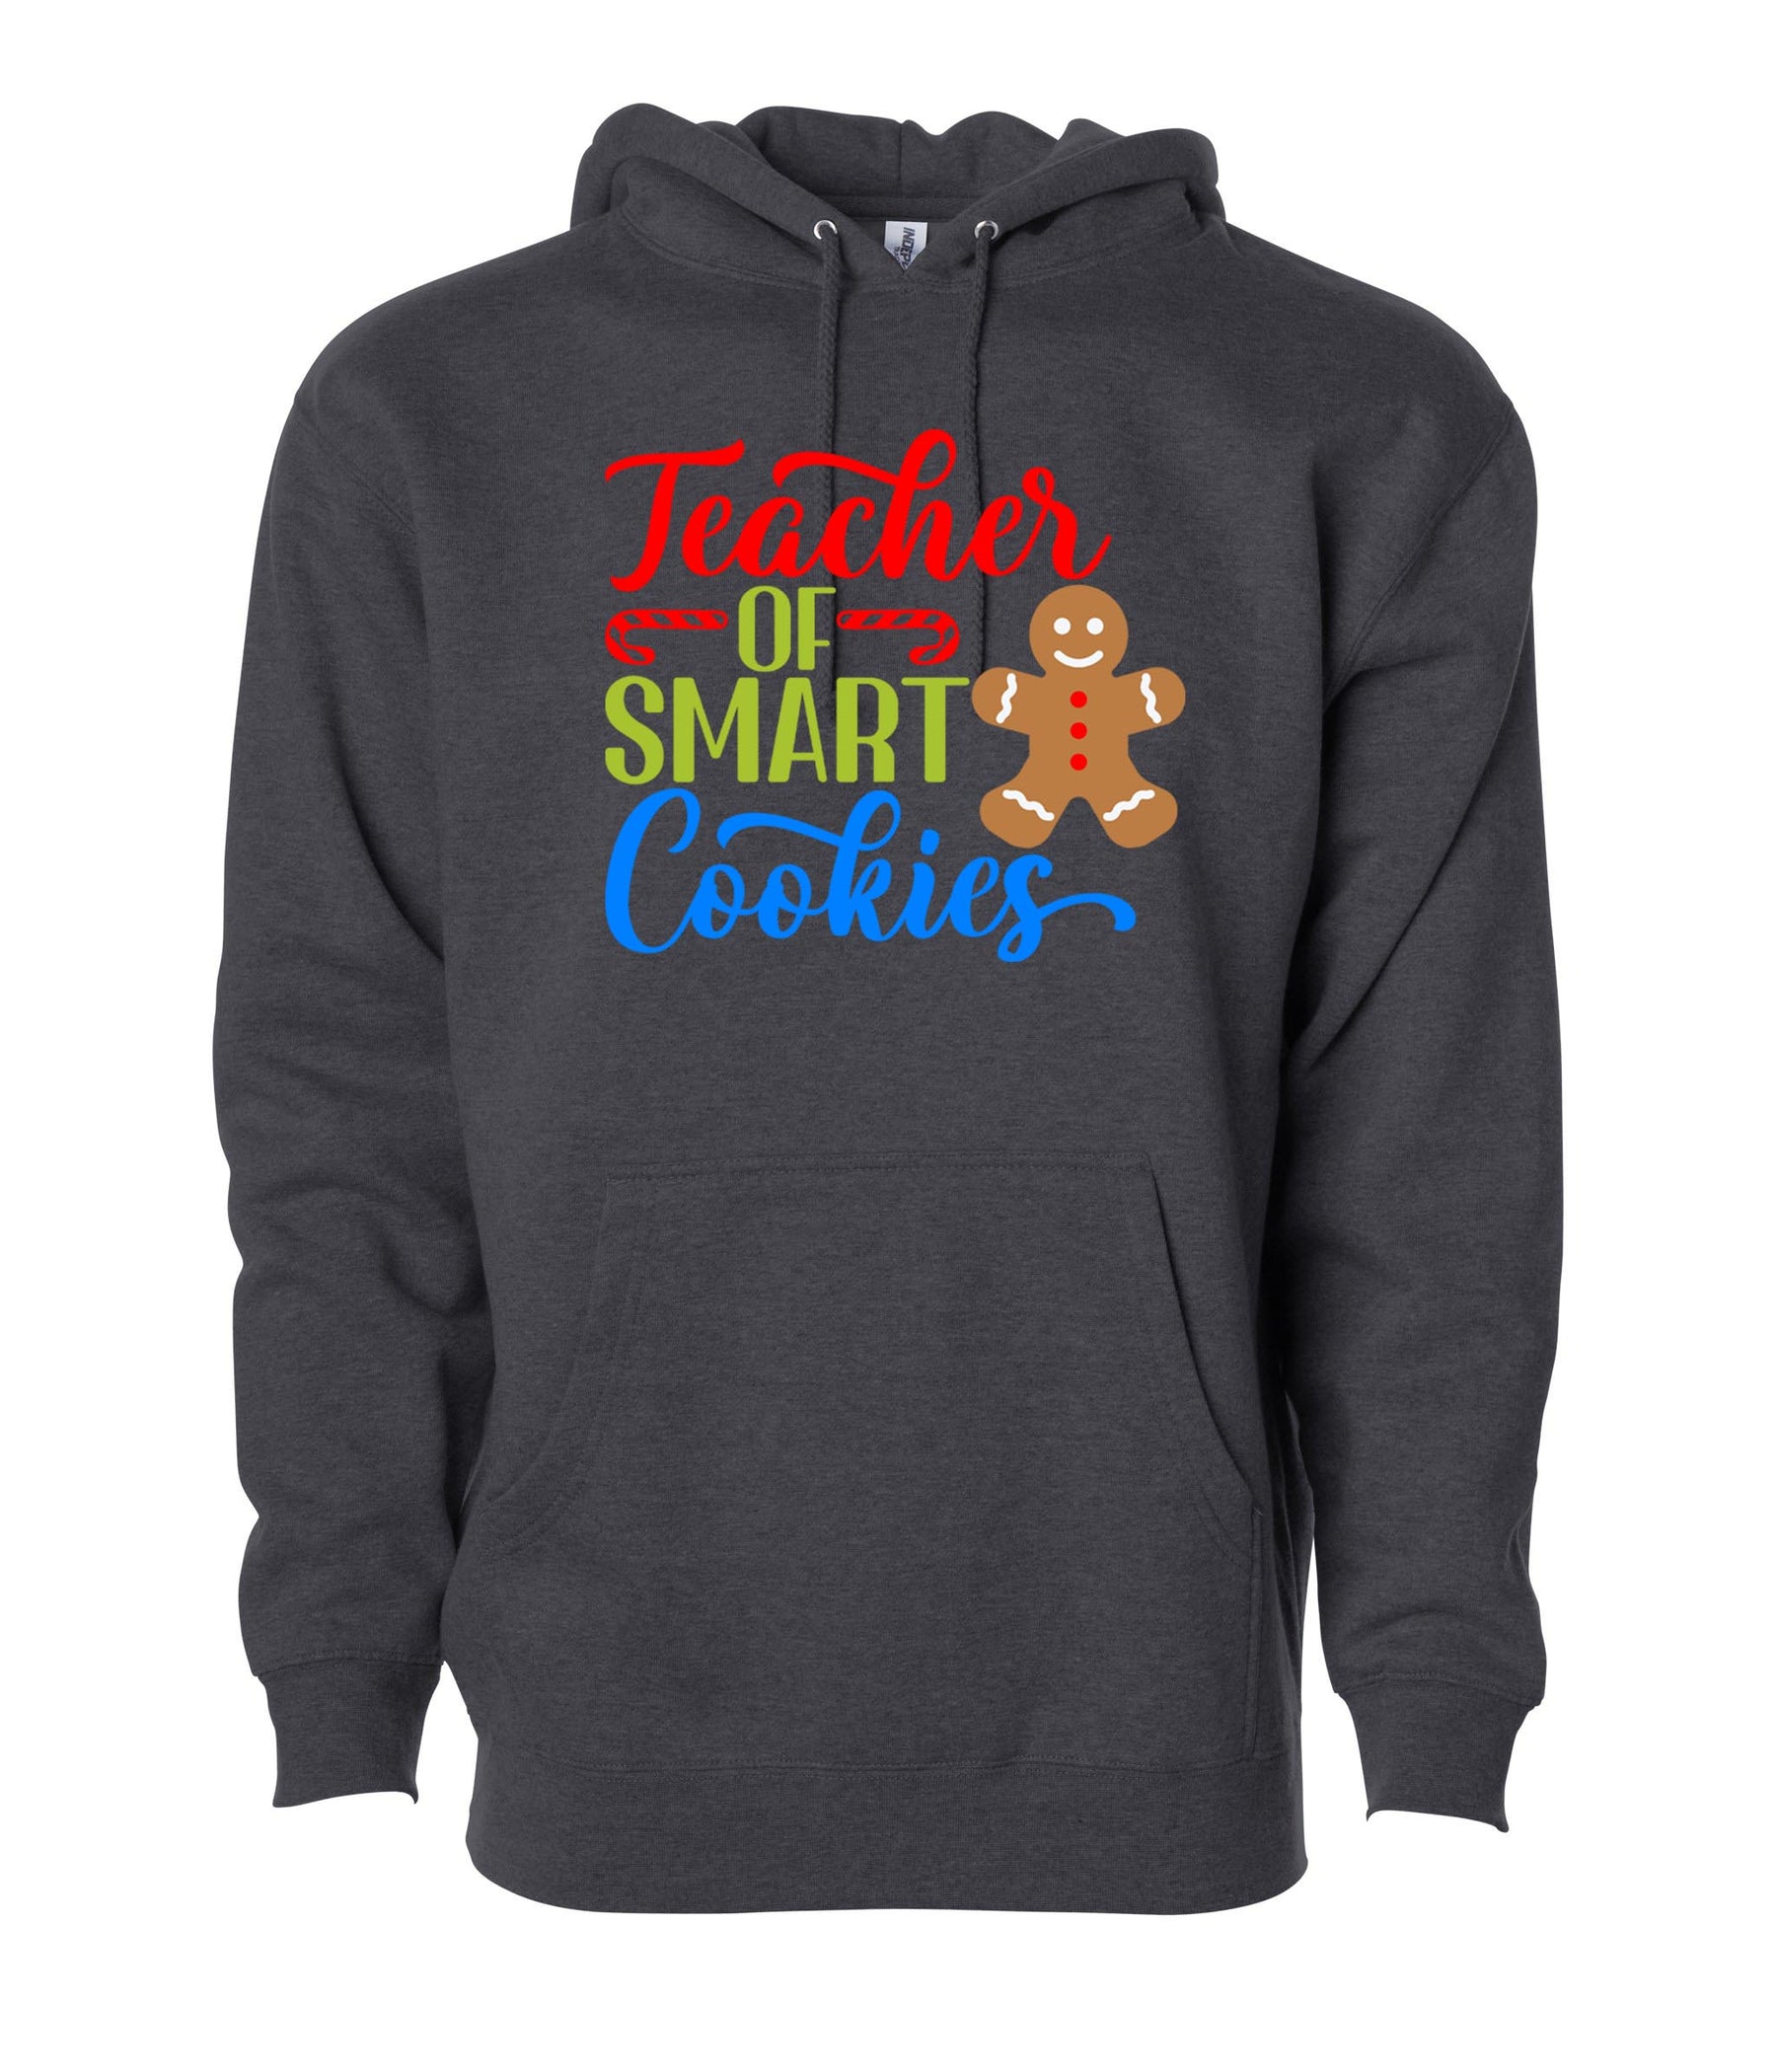 Teacher of smart cookies Hooded Sweatshirt